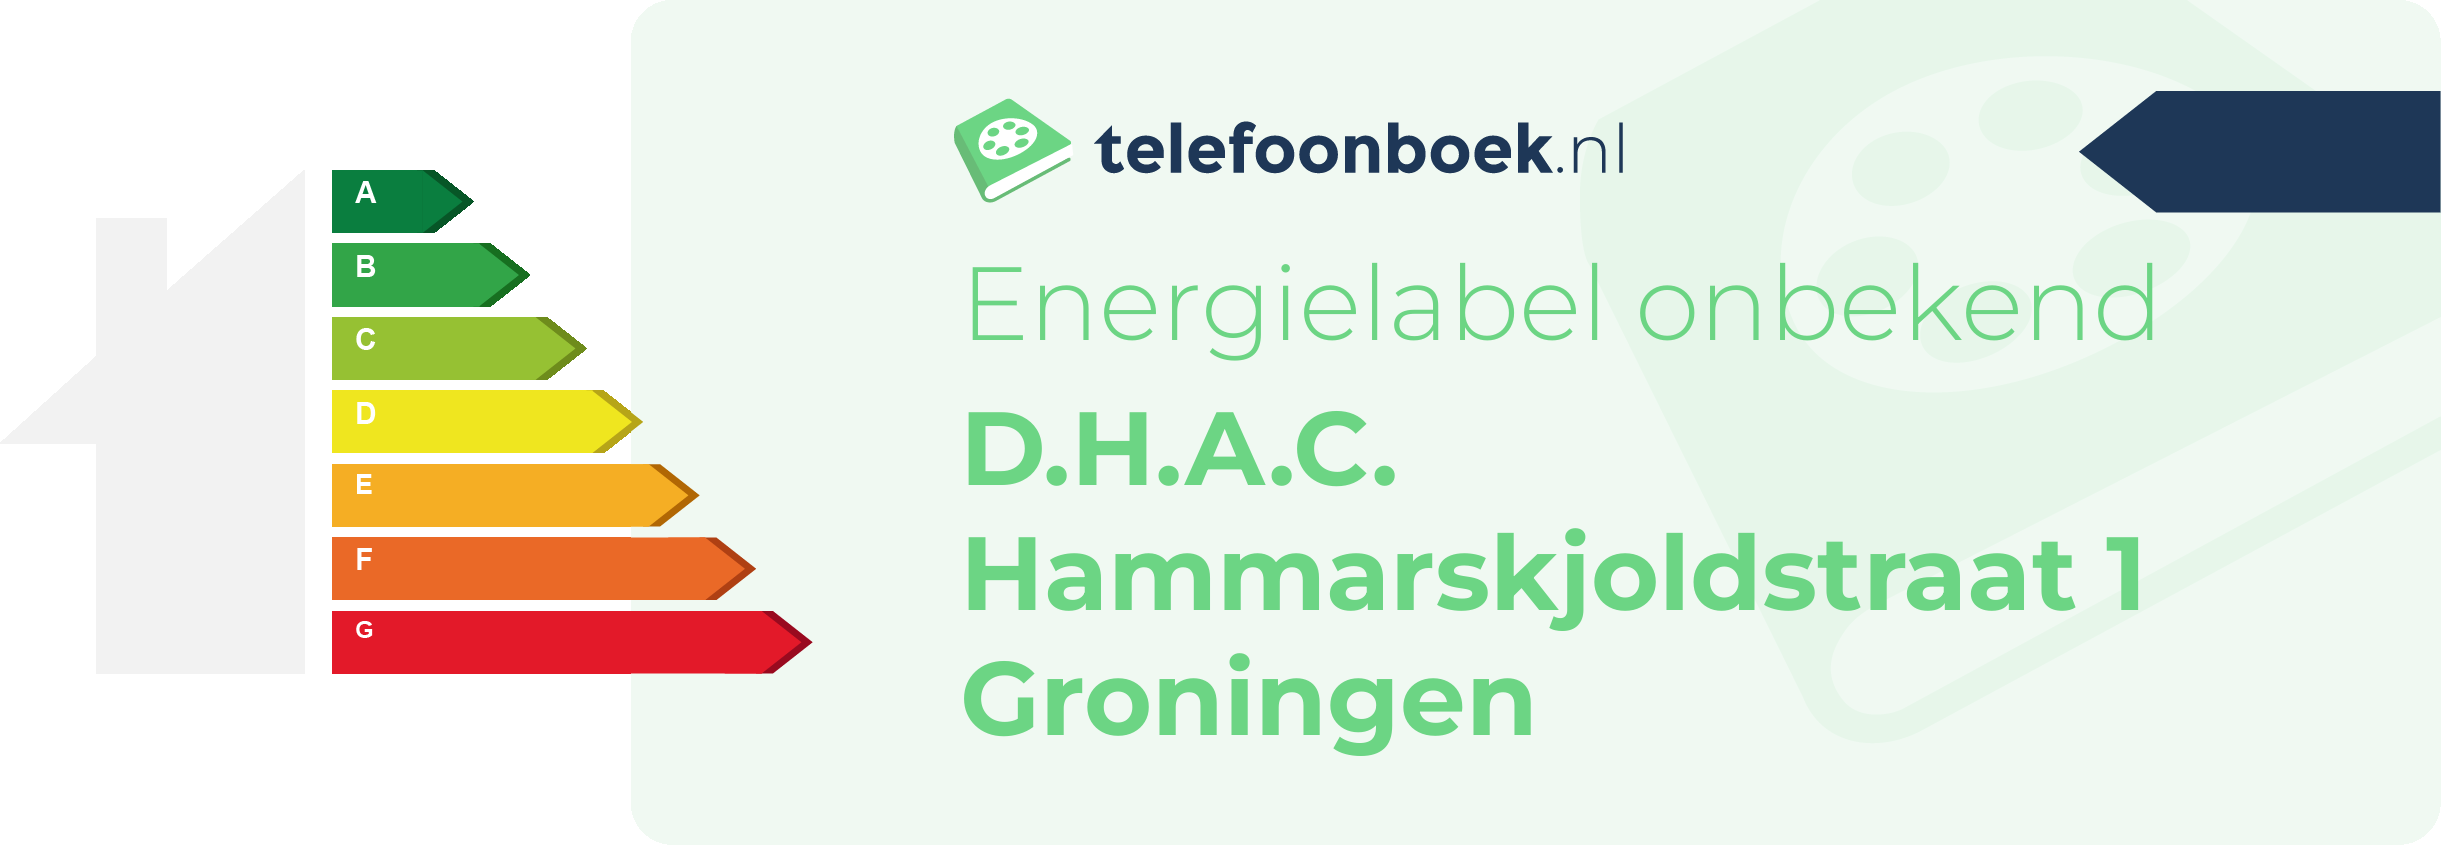 Energielabel D.H.A.C. Hammarskjoldstraat 1 Groningen